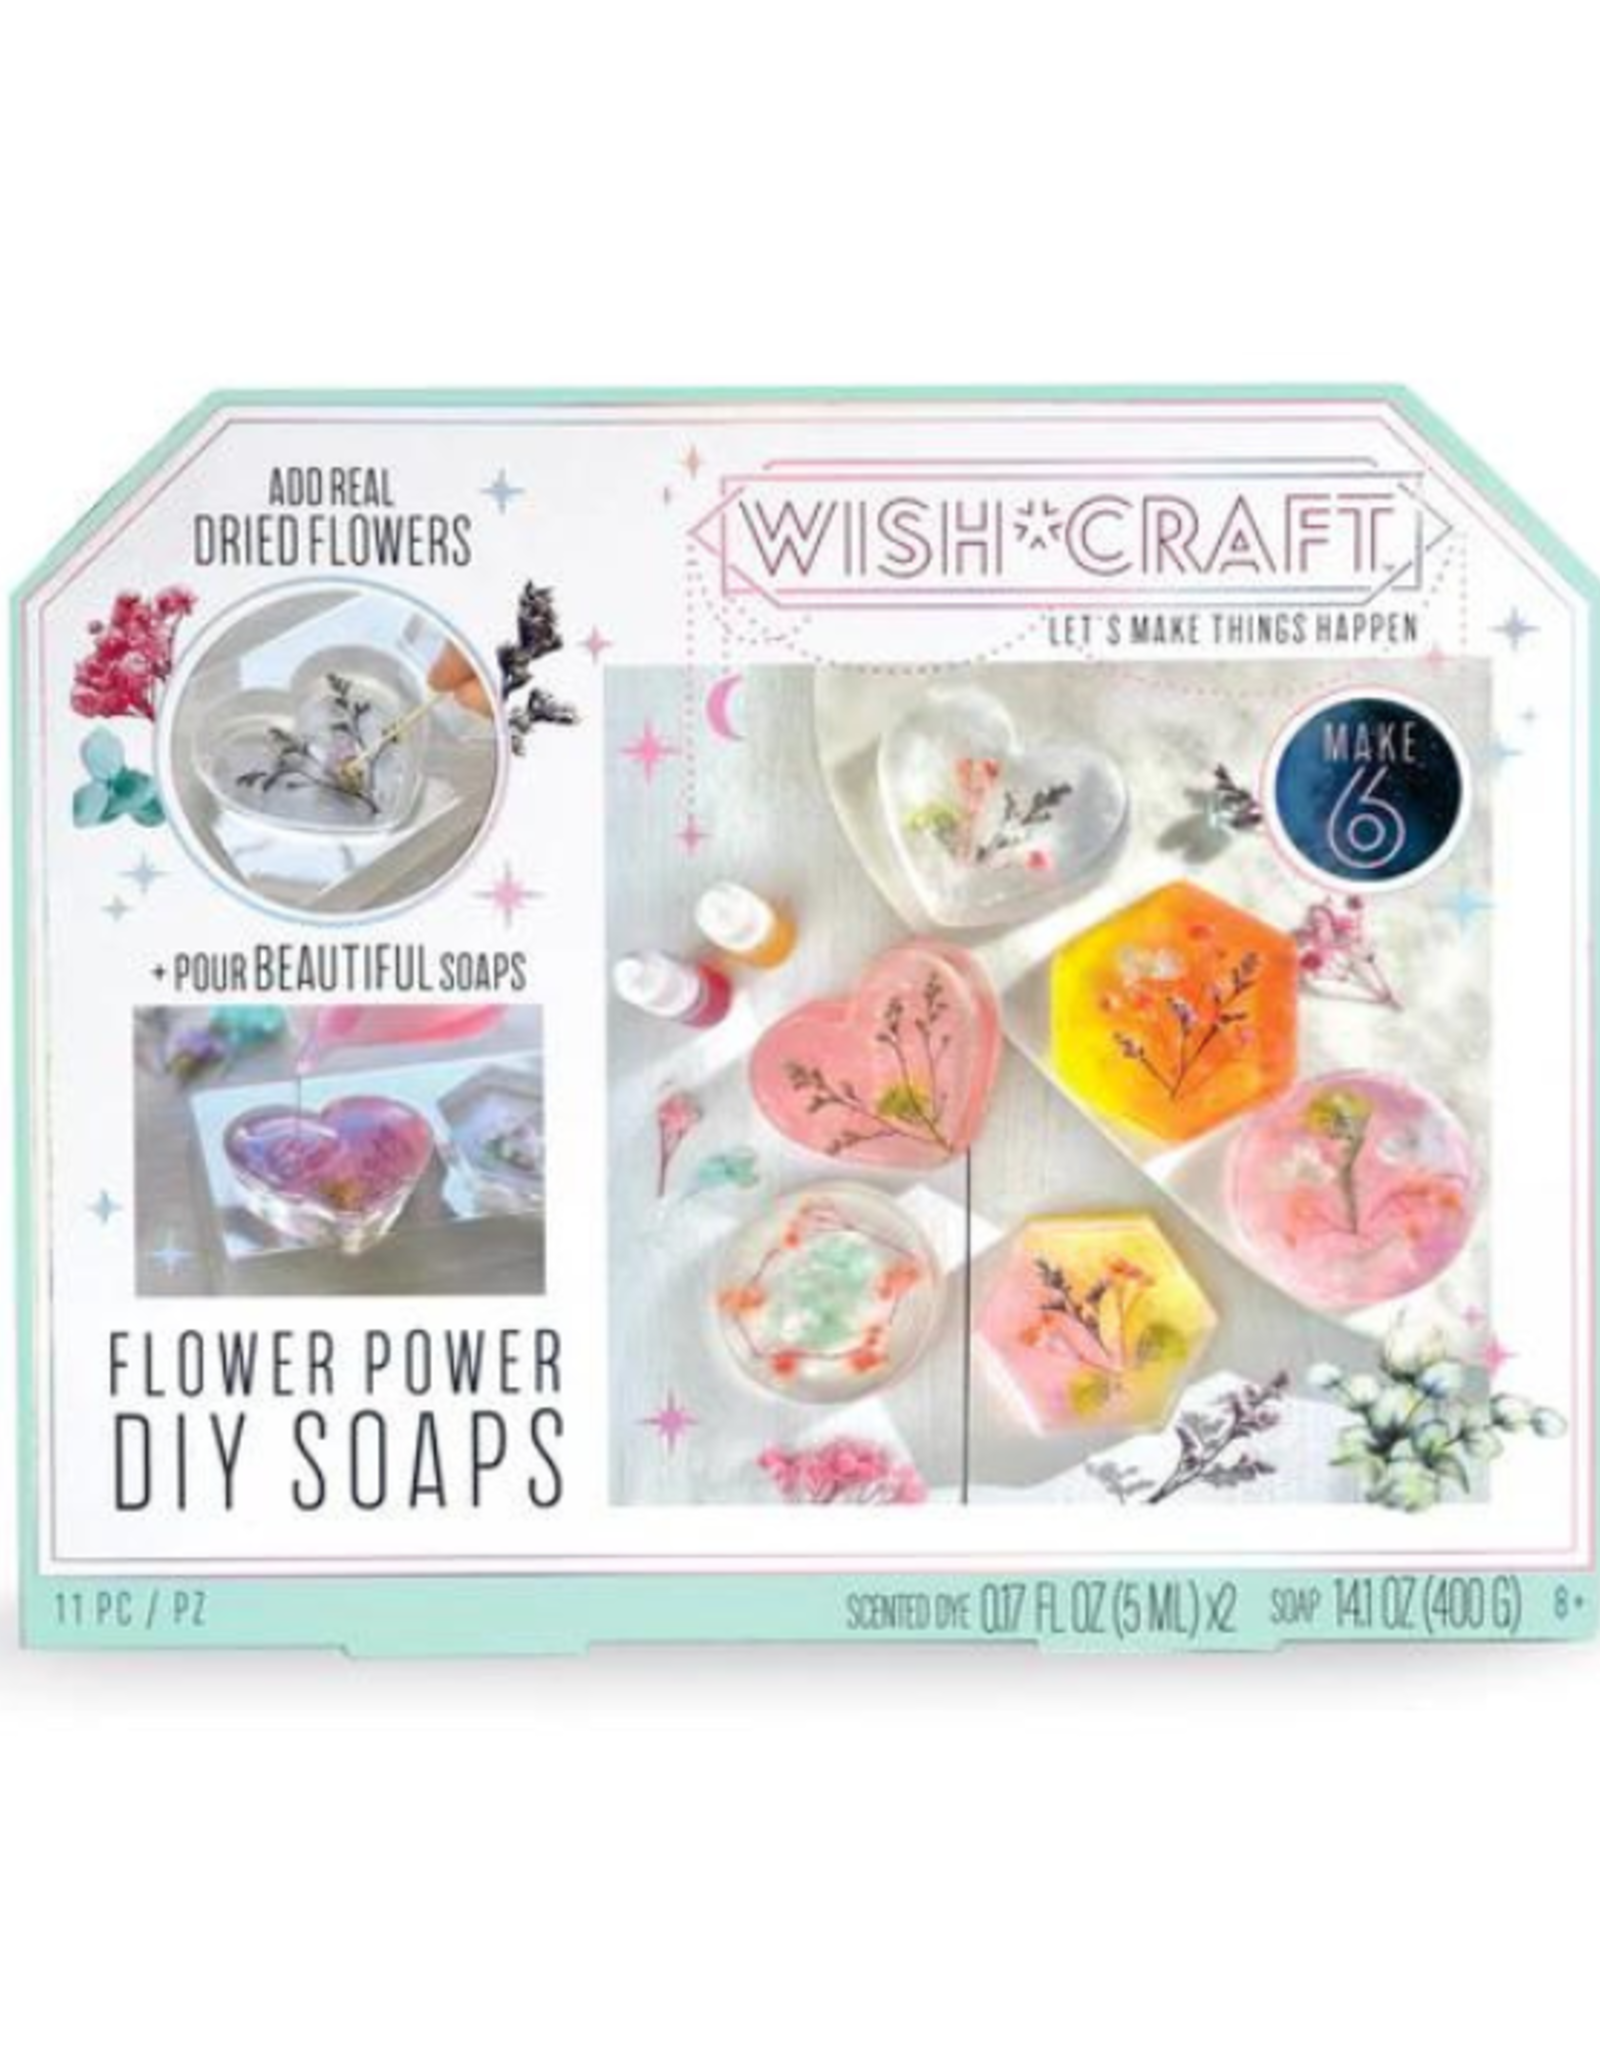 Wish*Craft Wish*Craft - Flower Power DIY Soaps